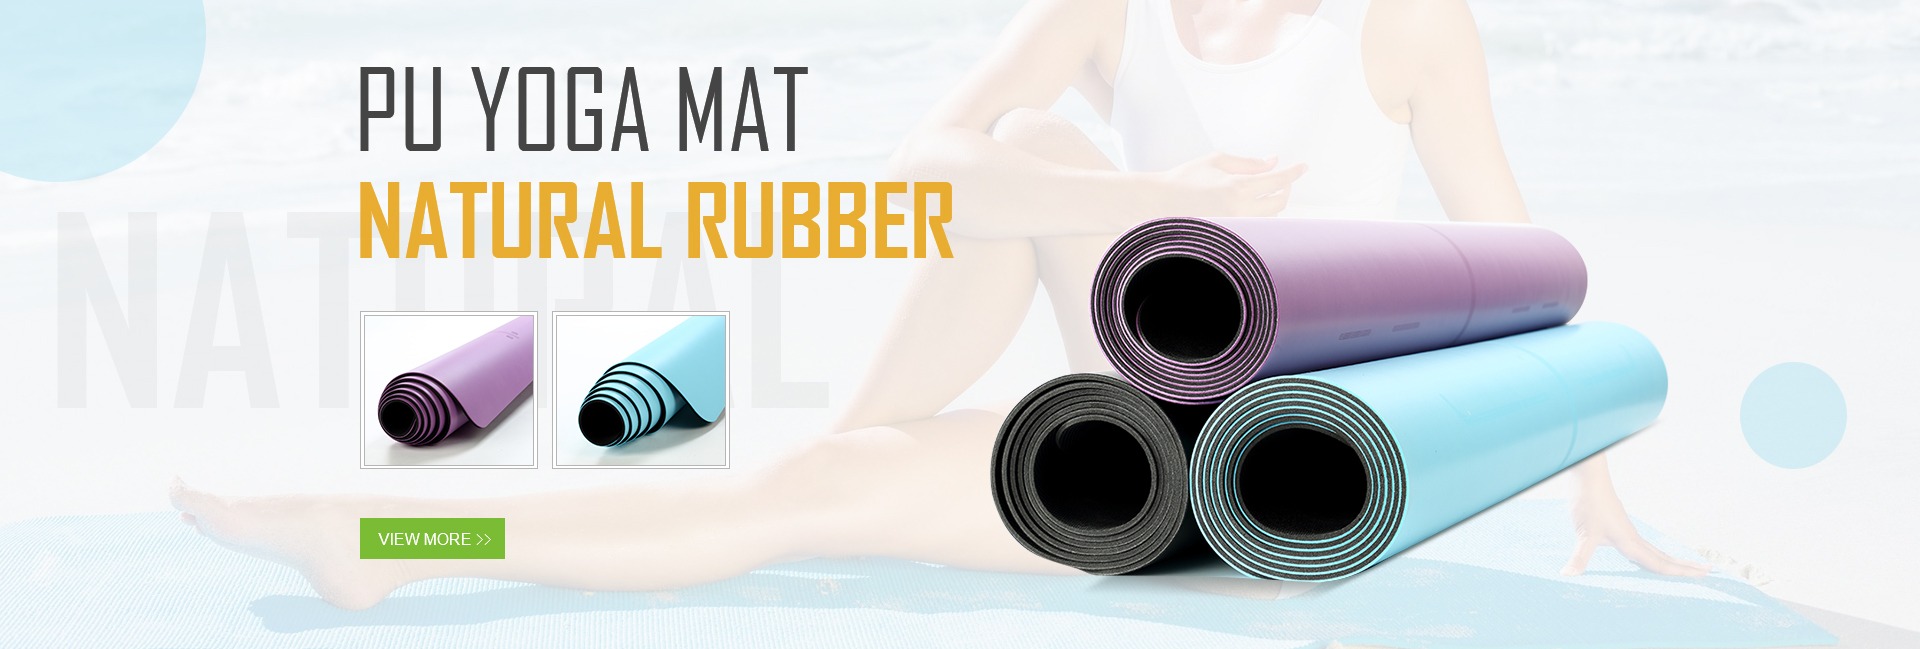 Natural rubber PU yoga mats